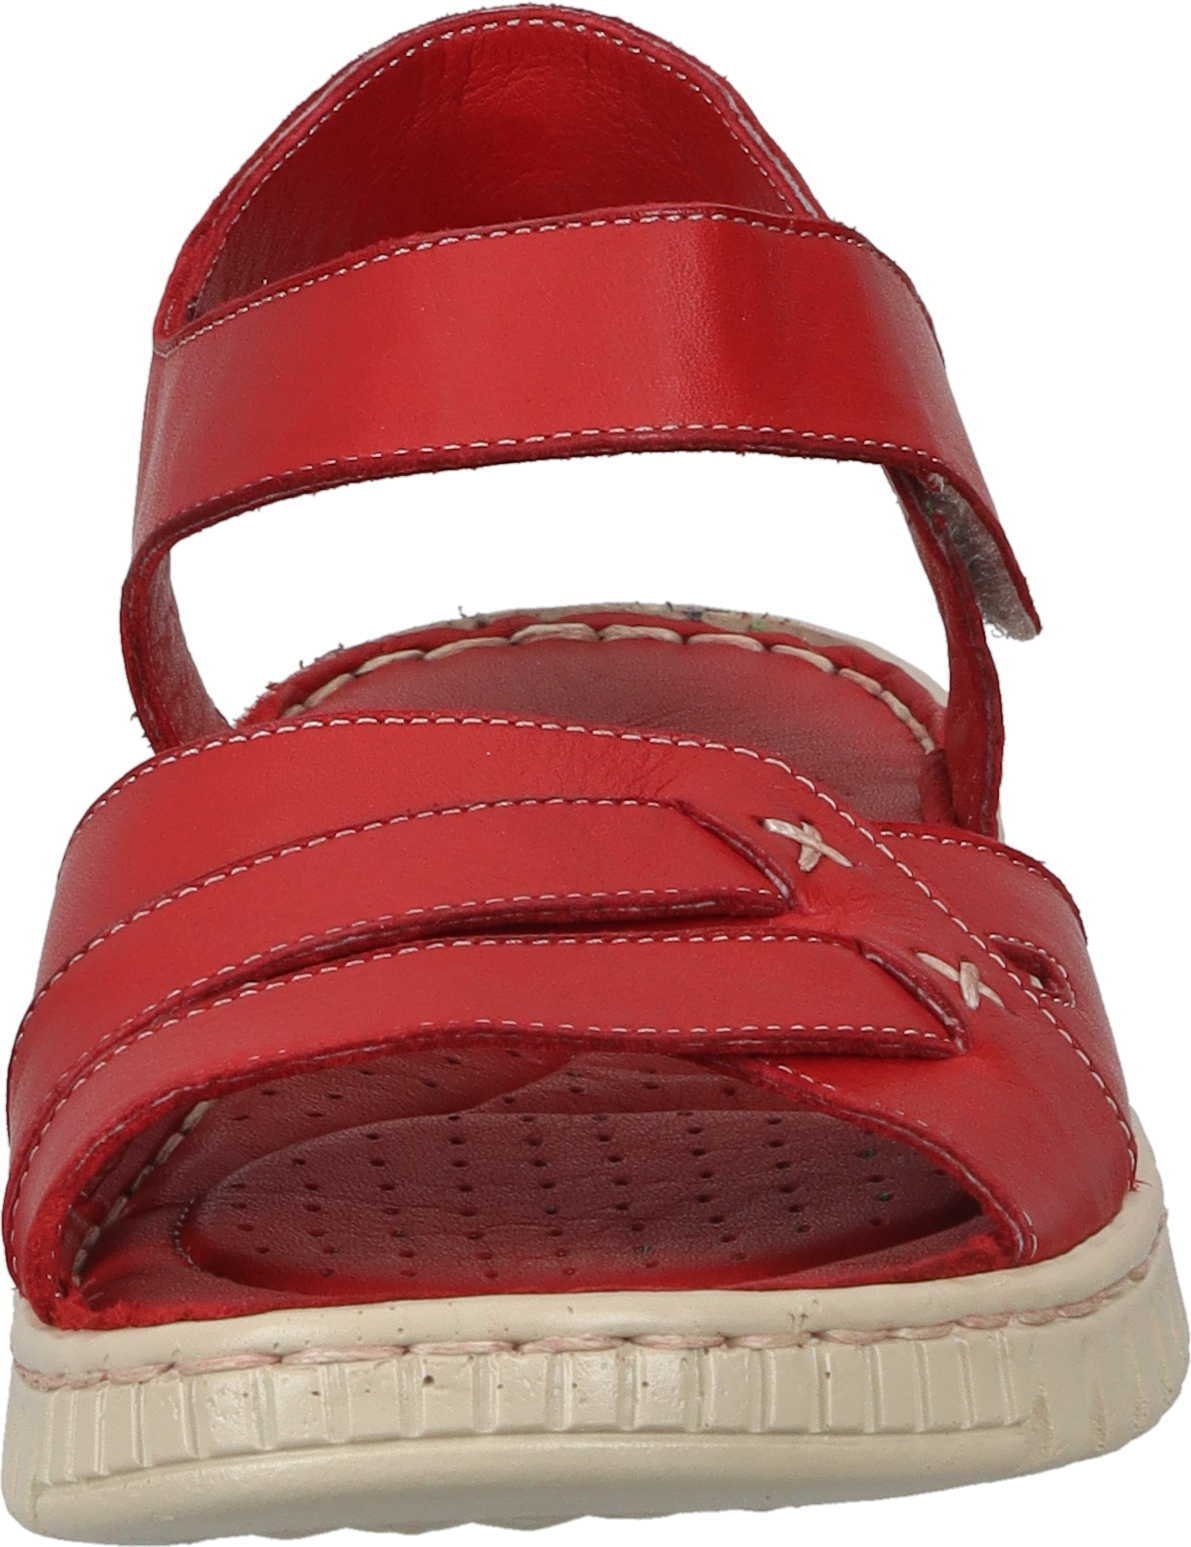 Sandalette rot aus Sandaletten Manitu Leder echtem